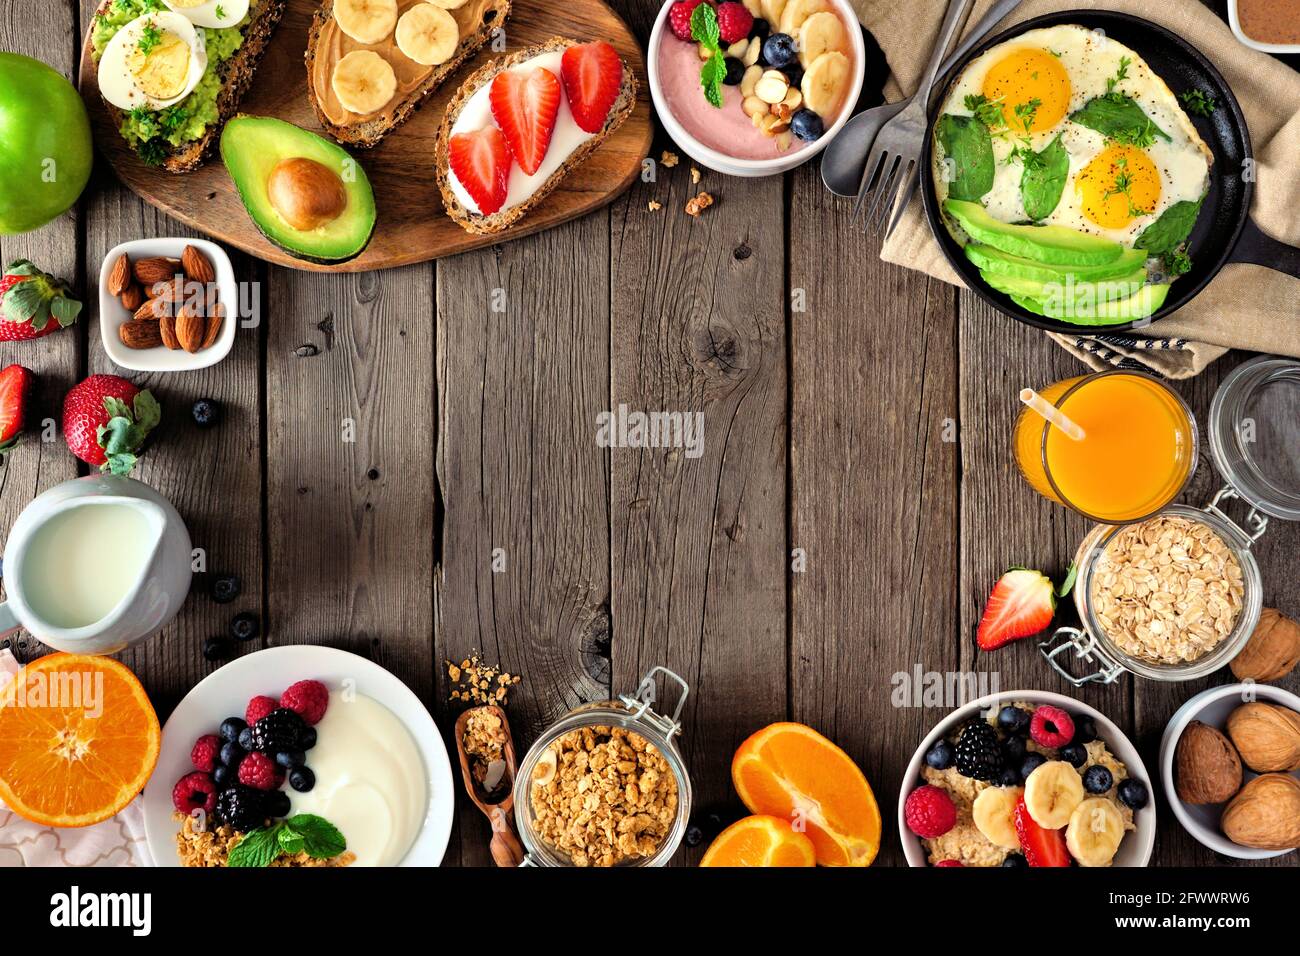 Cadre alimentaire sain pour le petit déjeuner. Scène de table avec fruits, yaourt, smoothie, flocons d'avoine, toasts nutritifs et poêle à œufs. Vue de dessus sur un arrière-plan rustique en bois Banque D'Images